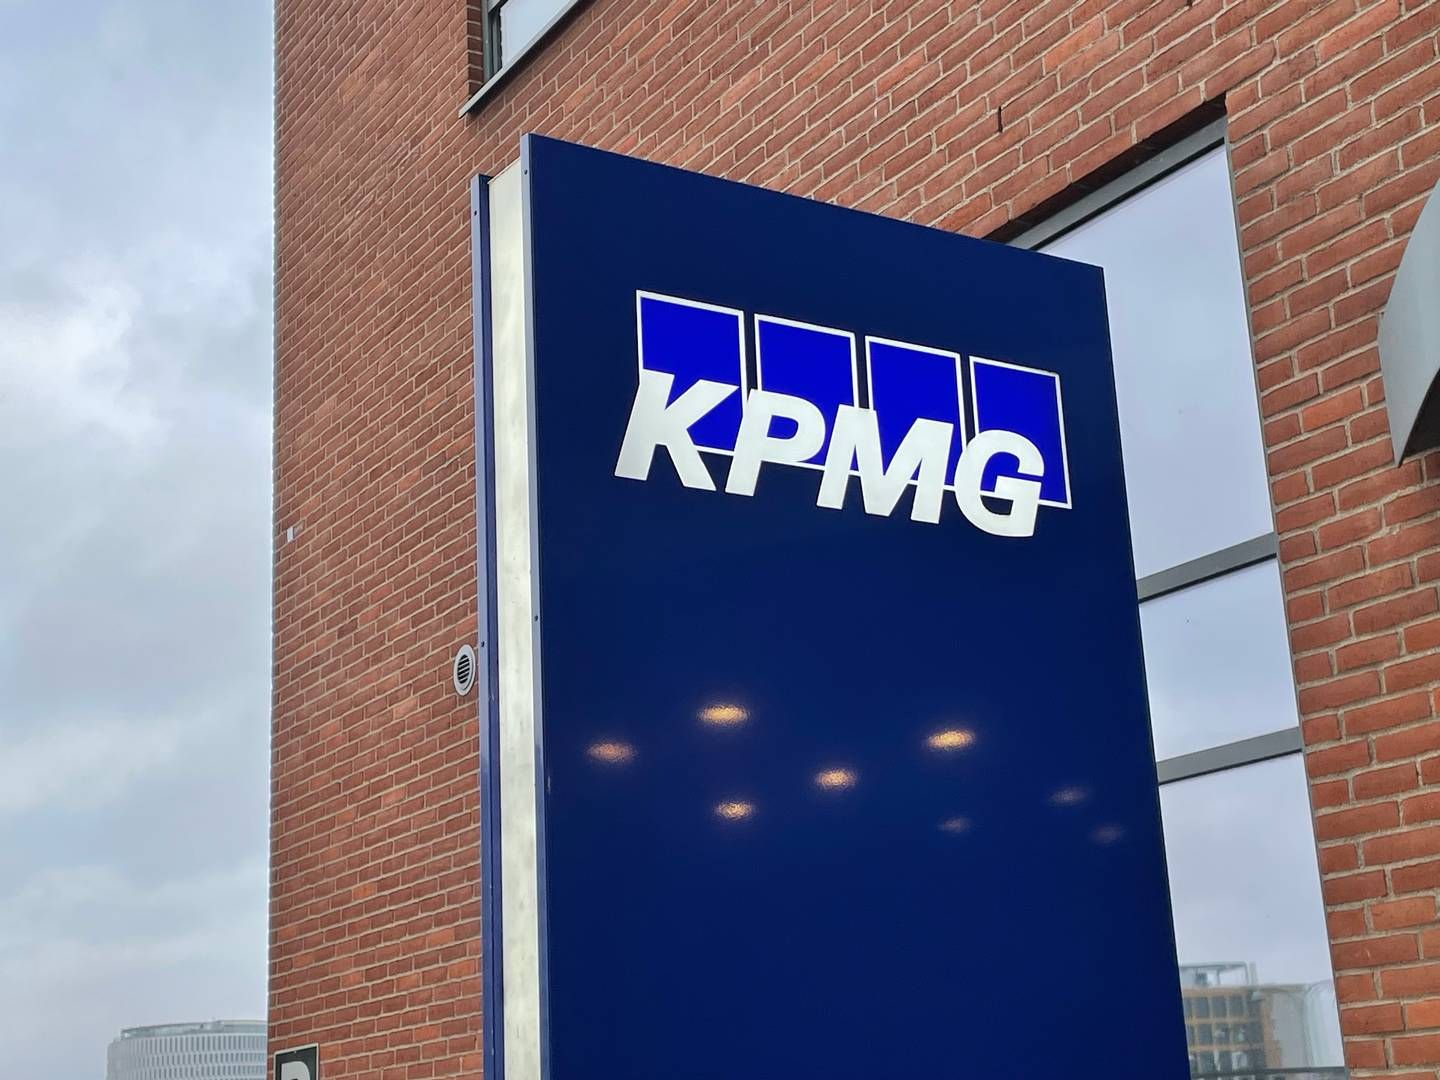 UTKONKURRERTE TO ANDRE: KPMG vant kontrakten i konkurranse med to andre selskaper. | Foto: Stian Olsen/AdvokatWatch